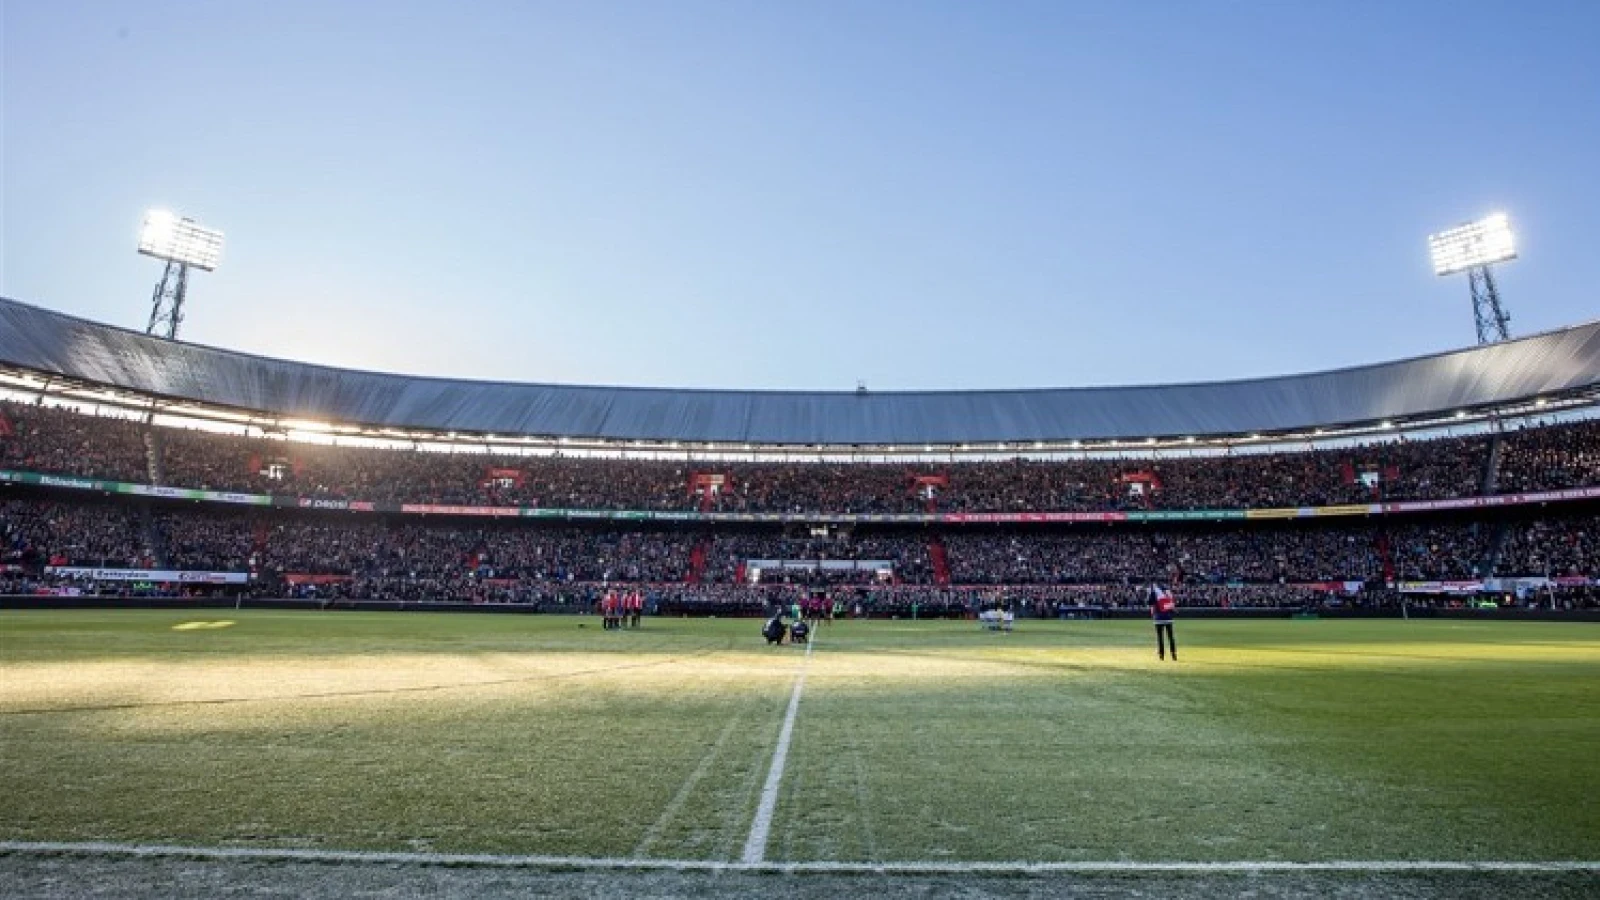 Ook Feyenoord met rouwbanden tegen FC Utrecht